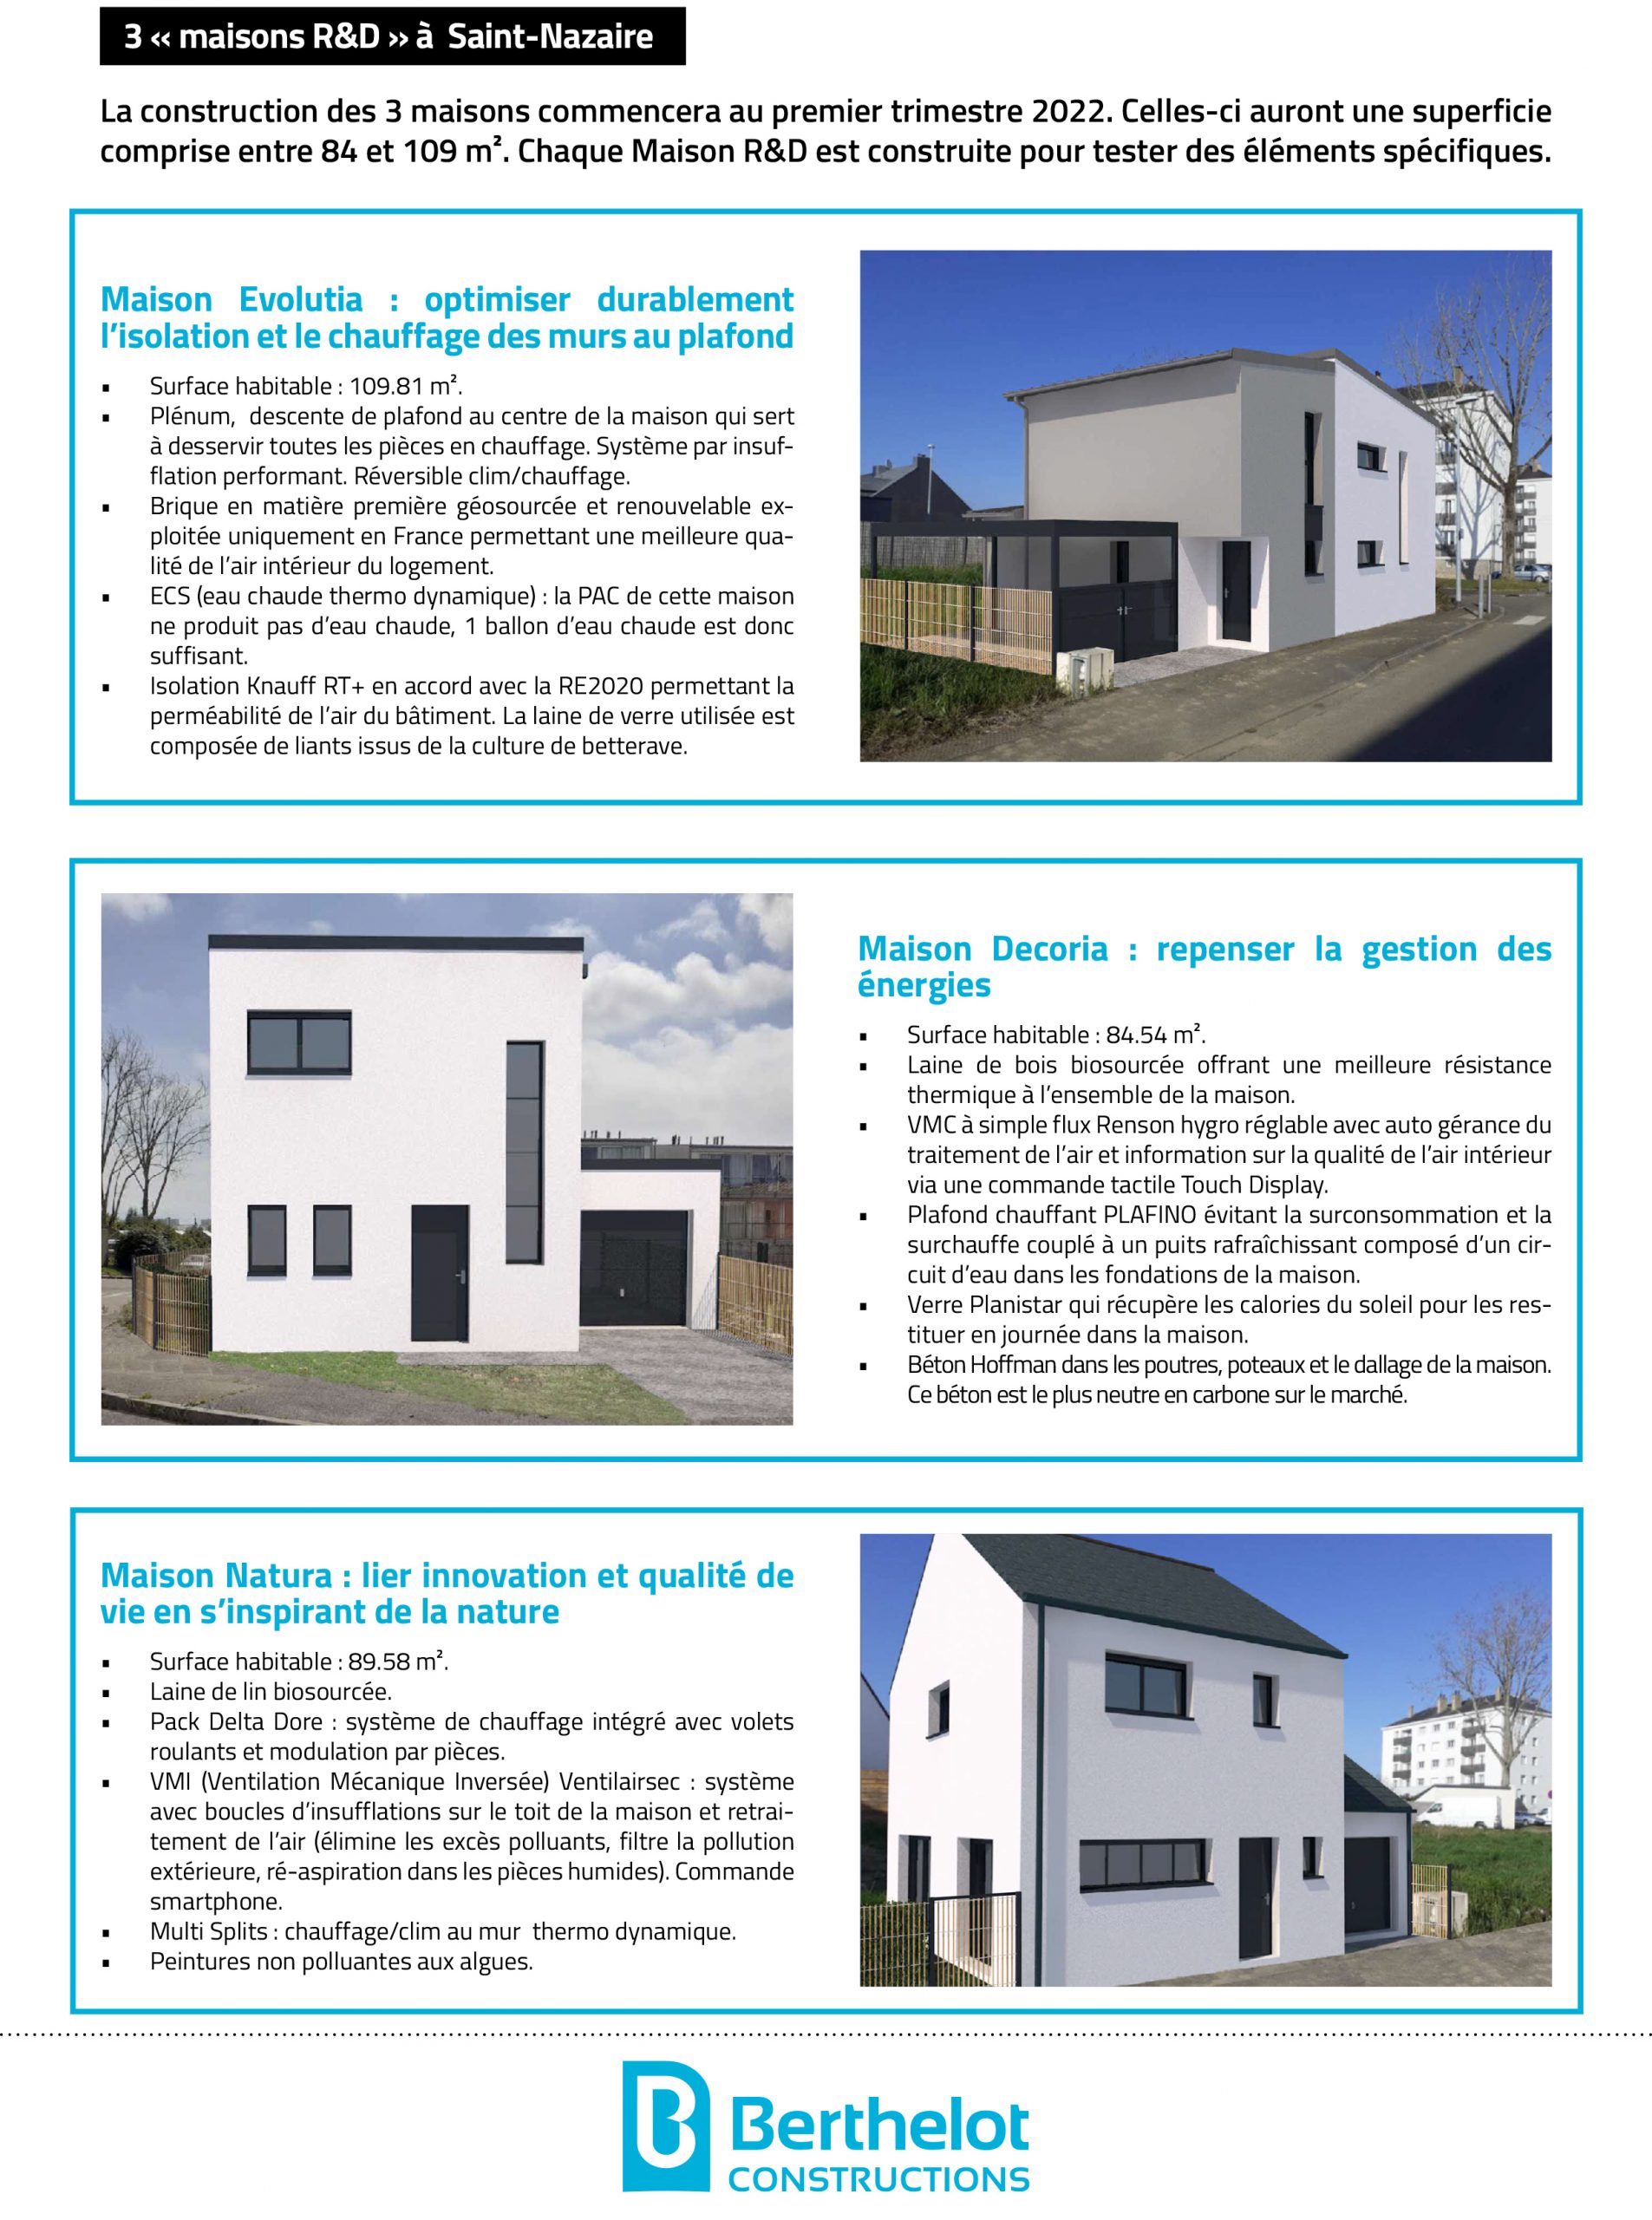 Maison R&D Saint-Nazaire- Berthelot Constructions